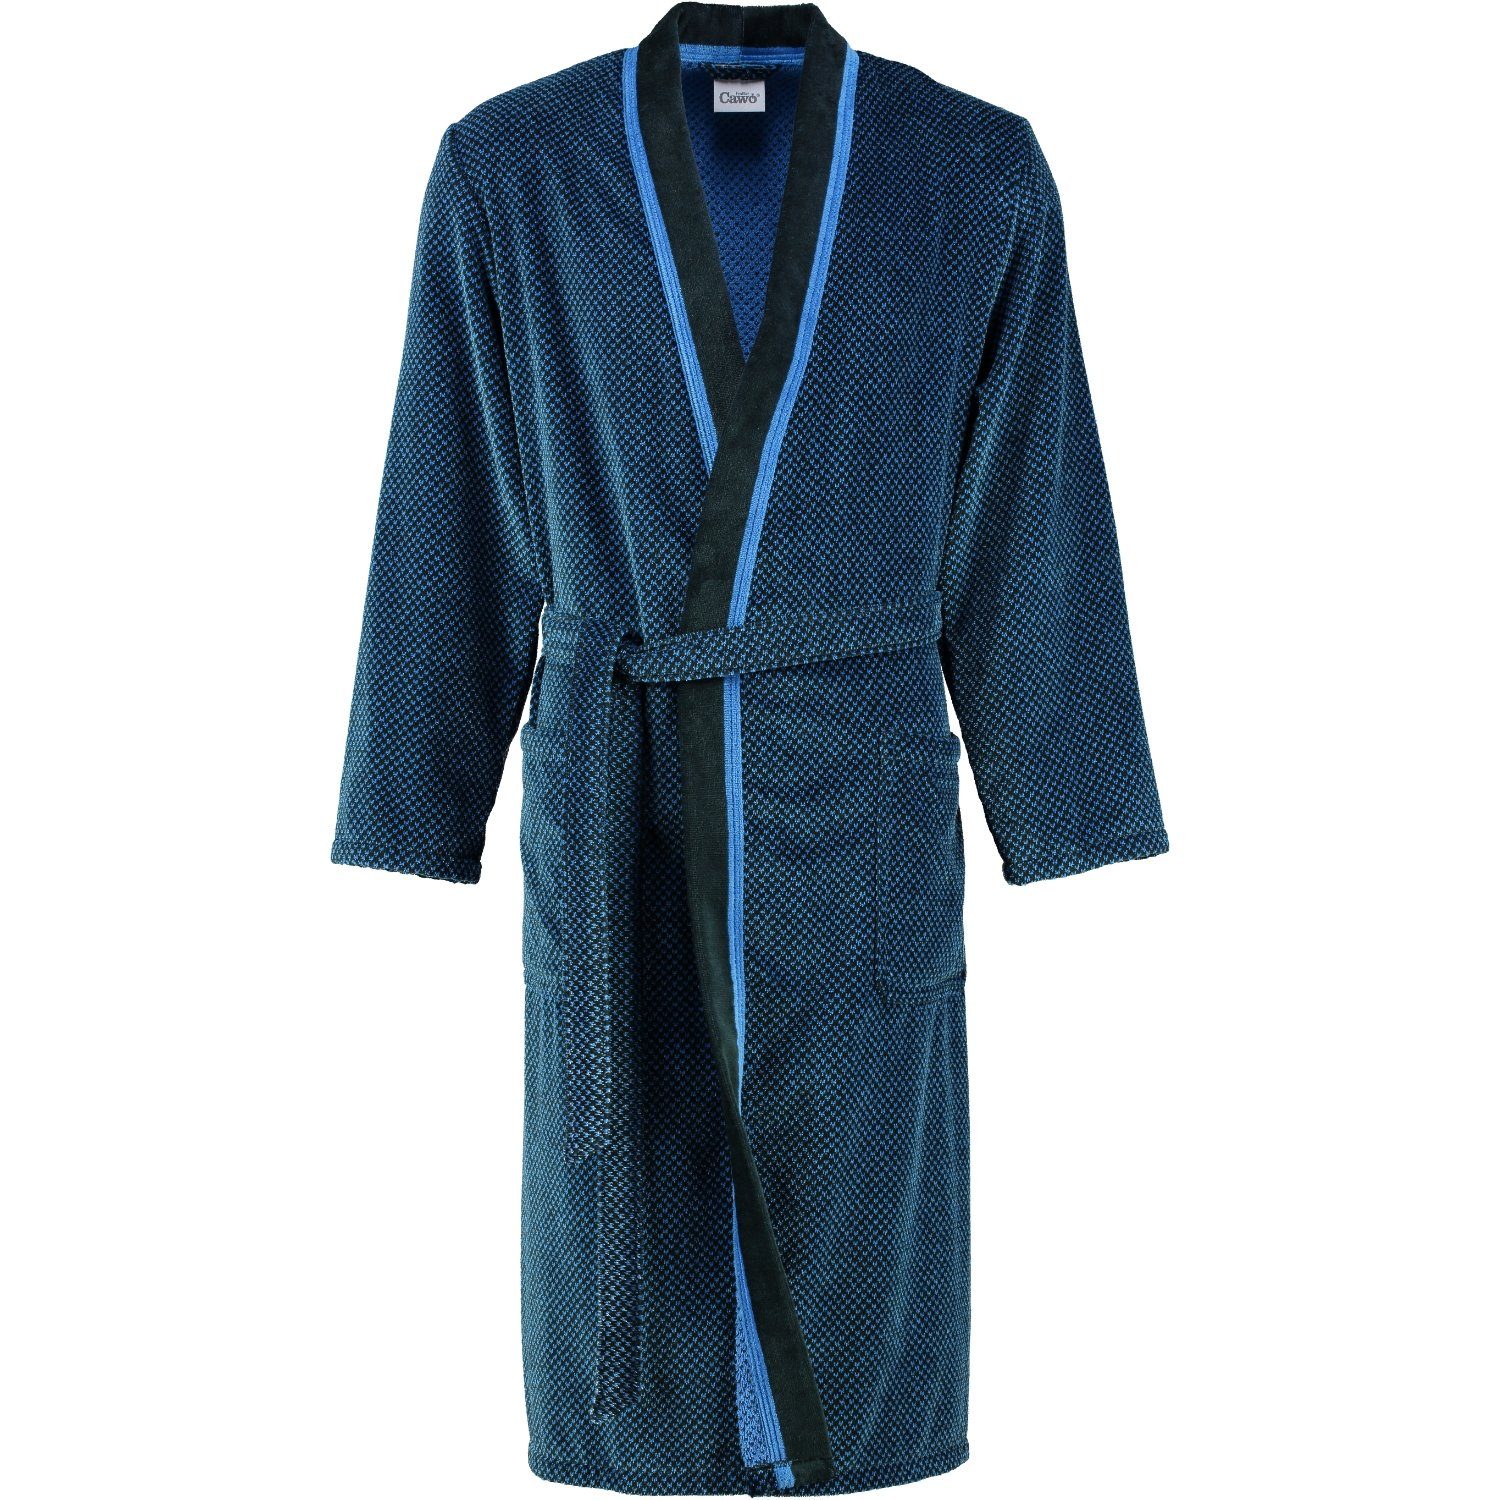 begrenzte Zeit verfügbar Cawö Herrenbademantel 19 4839, blau Form Kimonoform, Langform, Baumwolle, schwarz Gürtel, Kimono